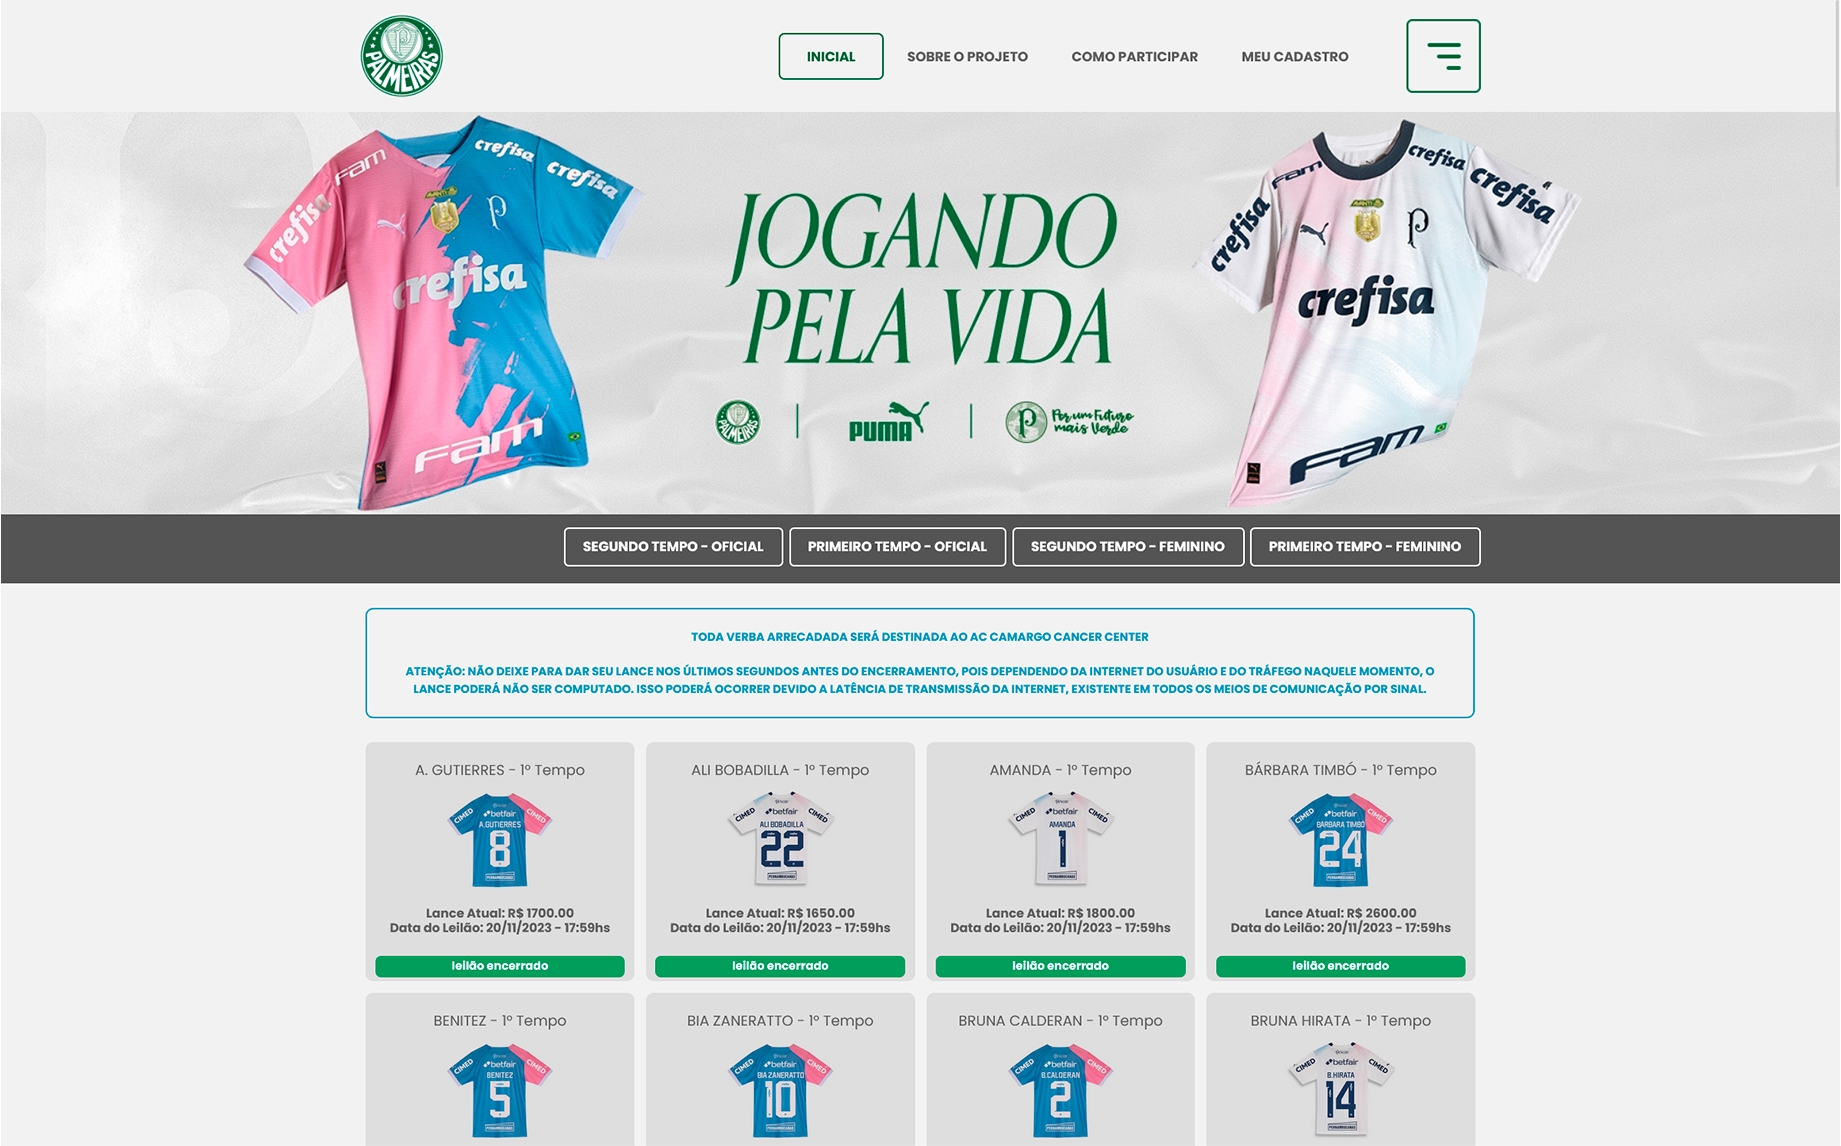 tela inicial do site jogandopelavida.com.br/